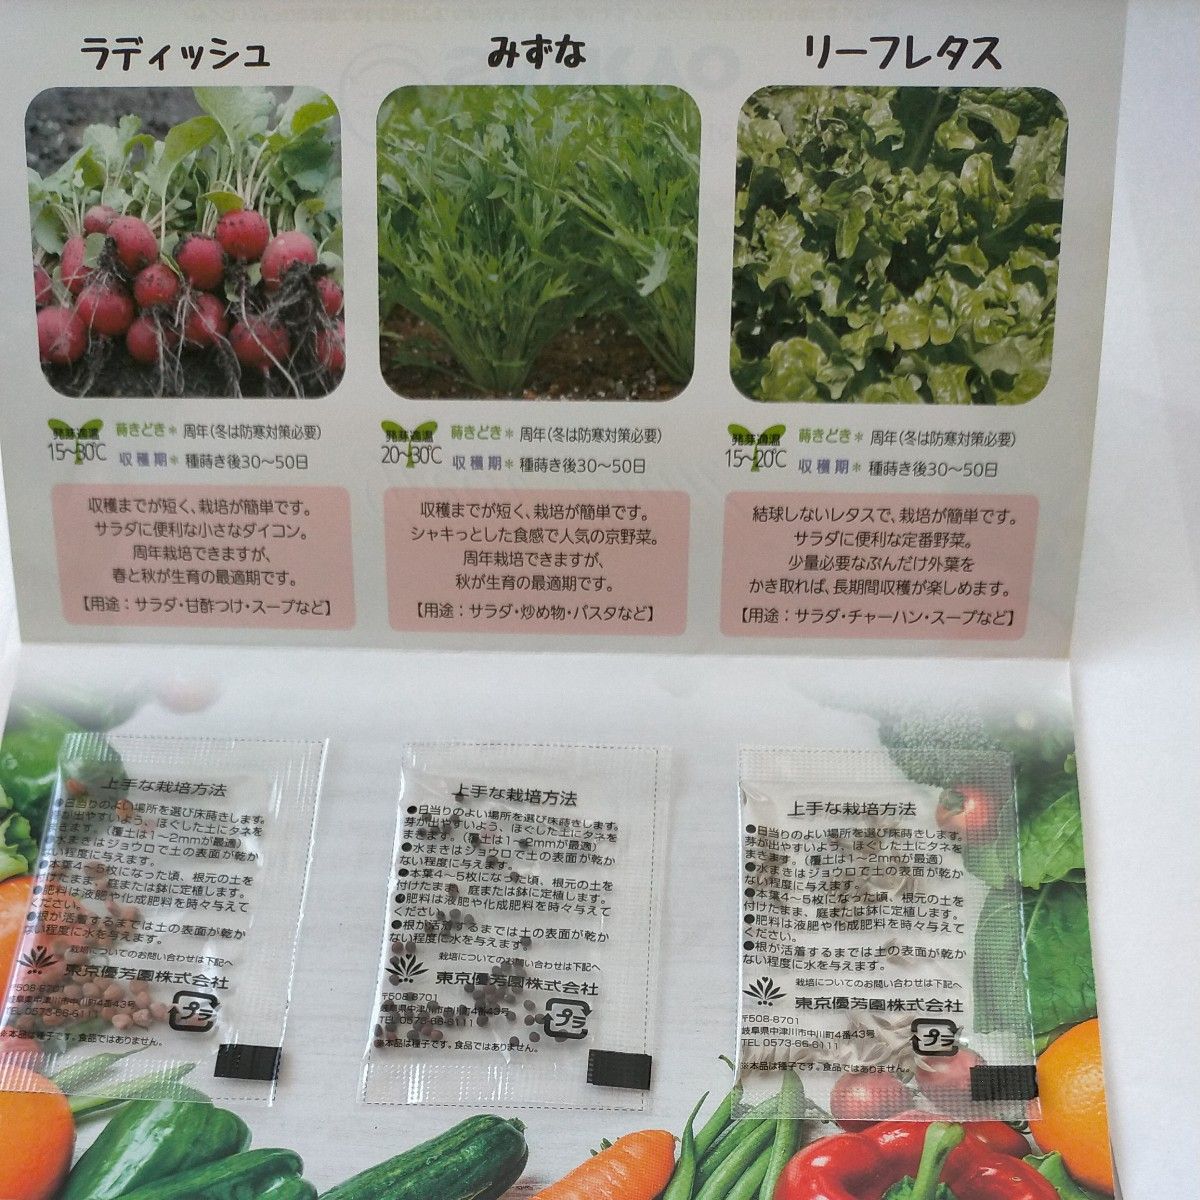 SANKYO 景品 グリーンメール 野菜のタネ 3種類 3個 とハーブのタネ3種類 2個 計5個セット